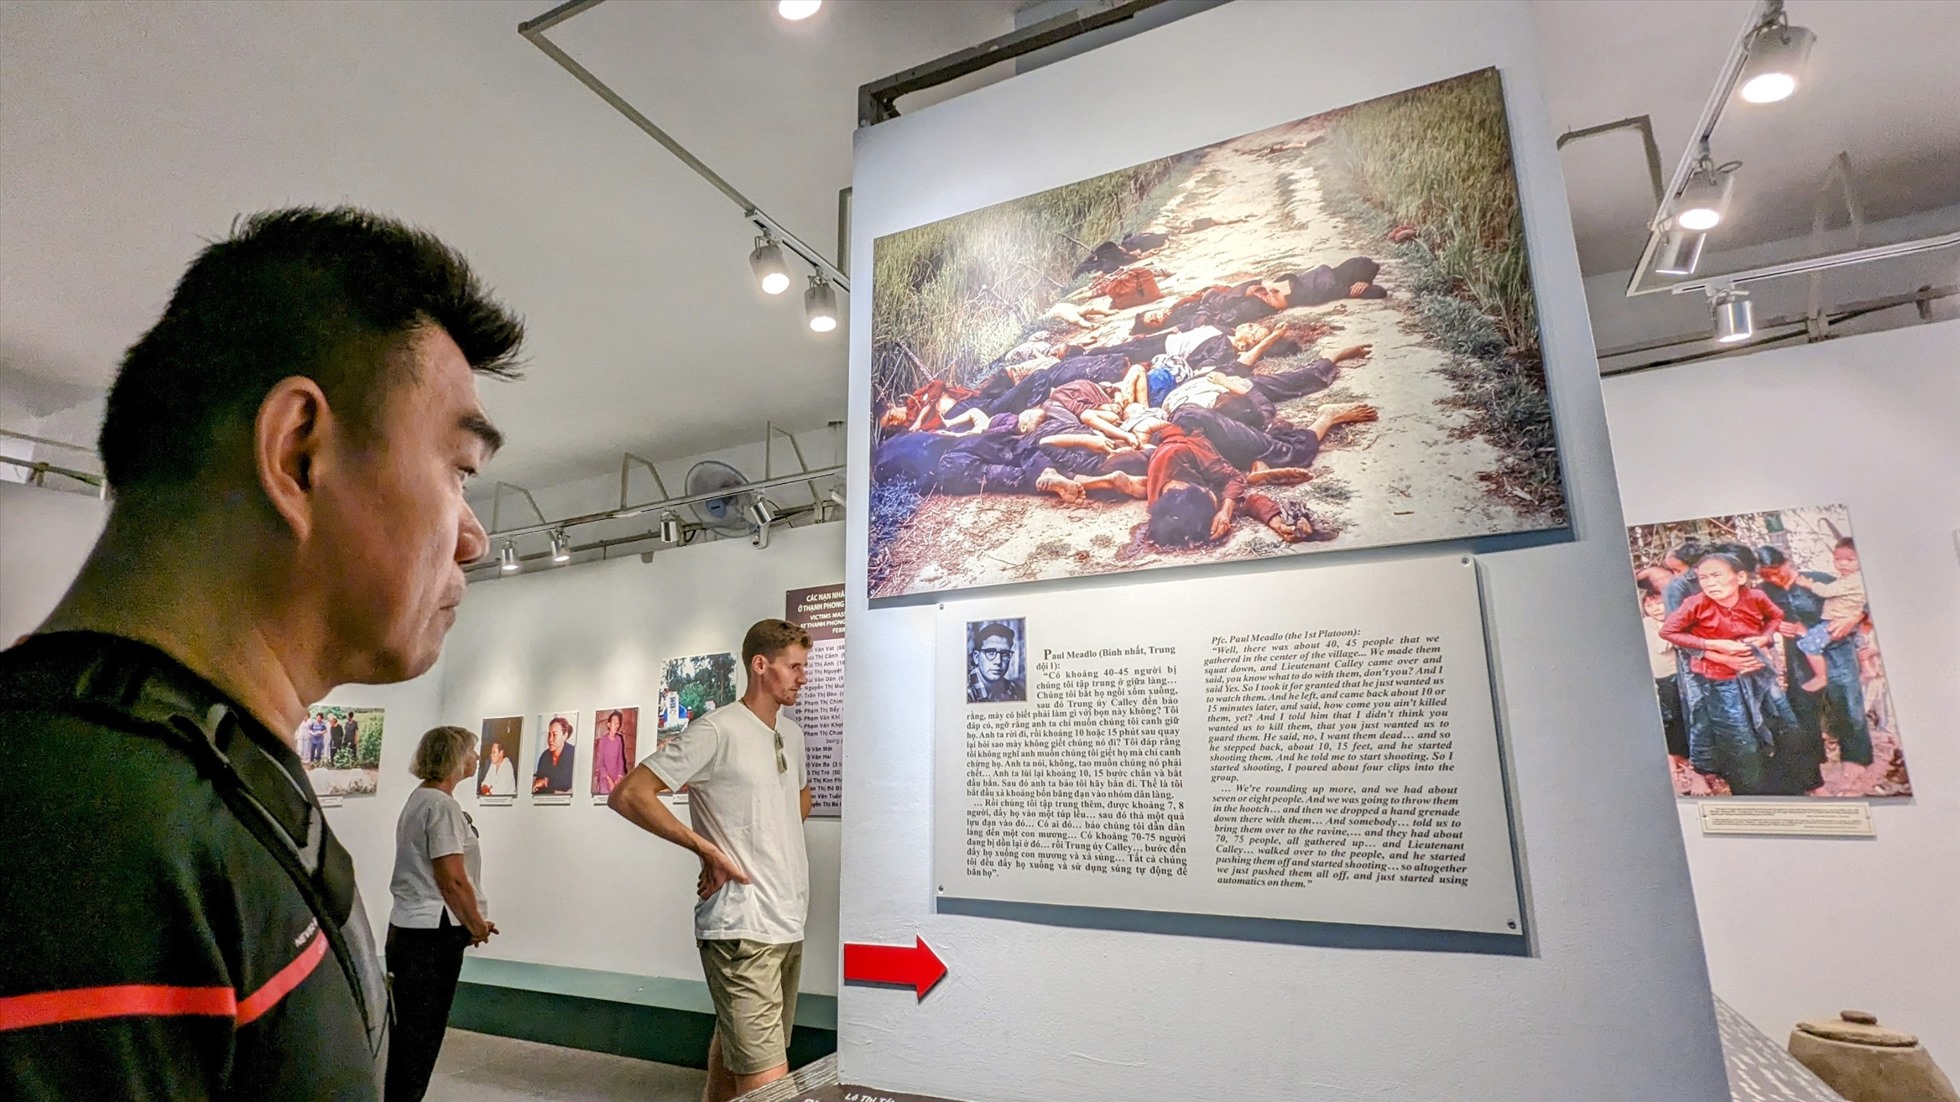 Trong không gian trưng bày “Tội ác chiến tranh xâm lược” tại tầng 2, nhiều du khách không khỏi xúc động khi nhìn những bức ảnh được chụp trong cuộc kháng chiến chống Mỹ